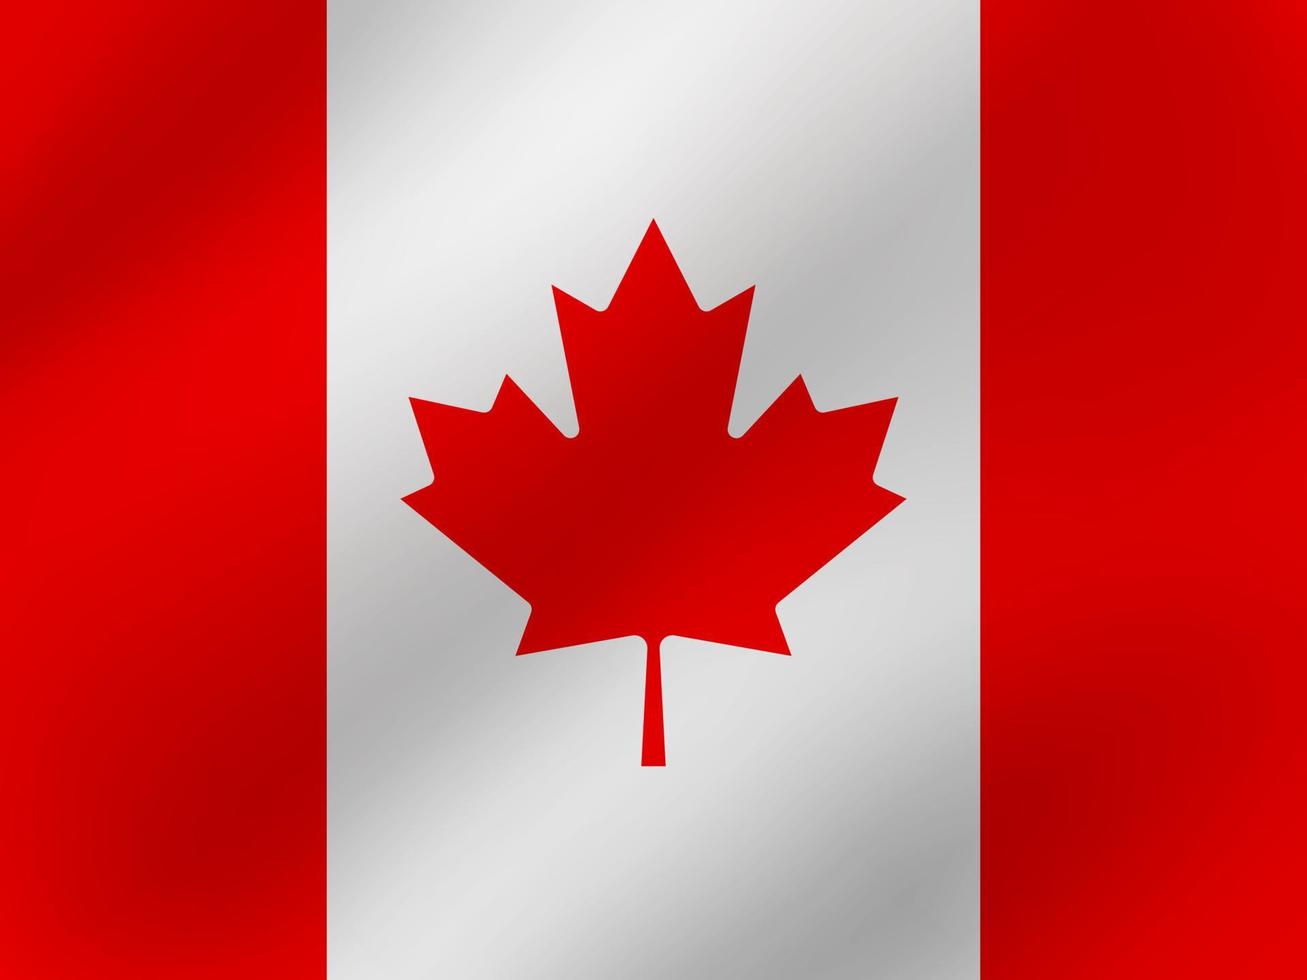 illustrazione ondulata realistica di vettore del design della bandiera del Canada